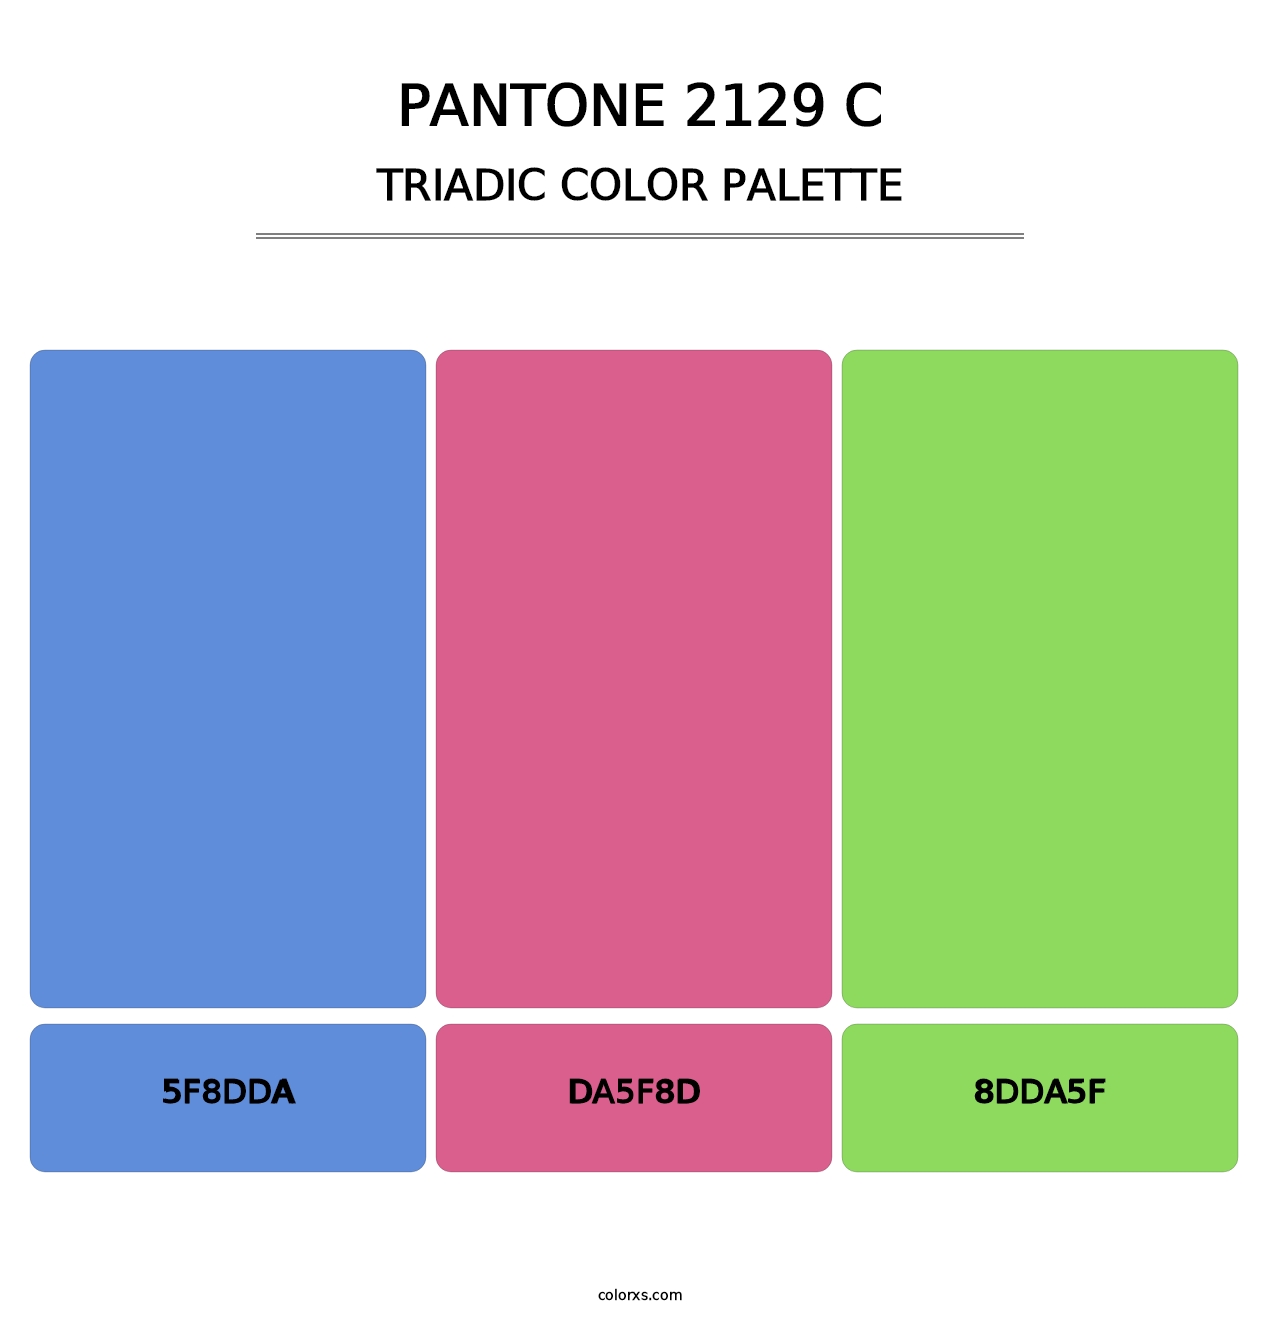 PANTONE 2129 C - Triadic Color Palette